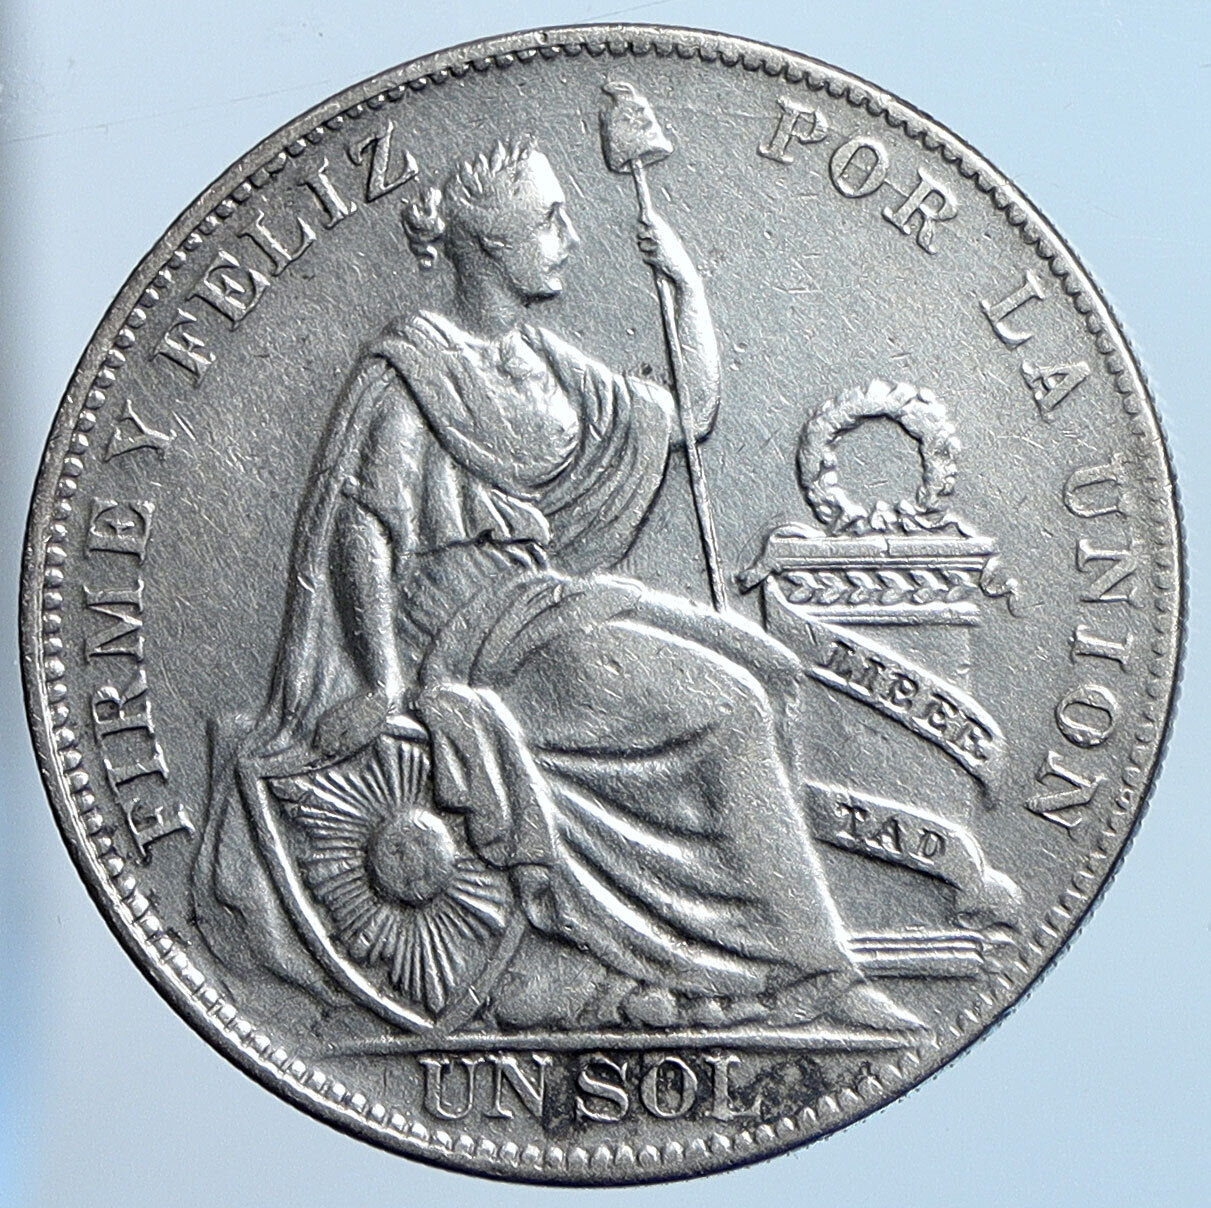 1934 PERU South America 1 SOL Antique BIG Original Silver Peruvian Coin i114546